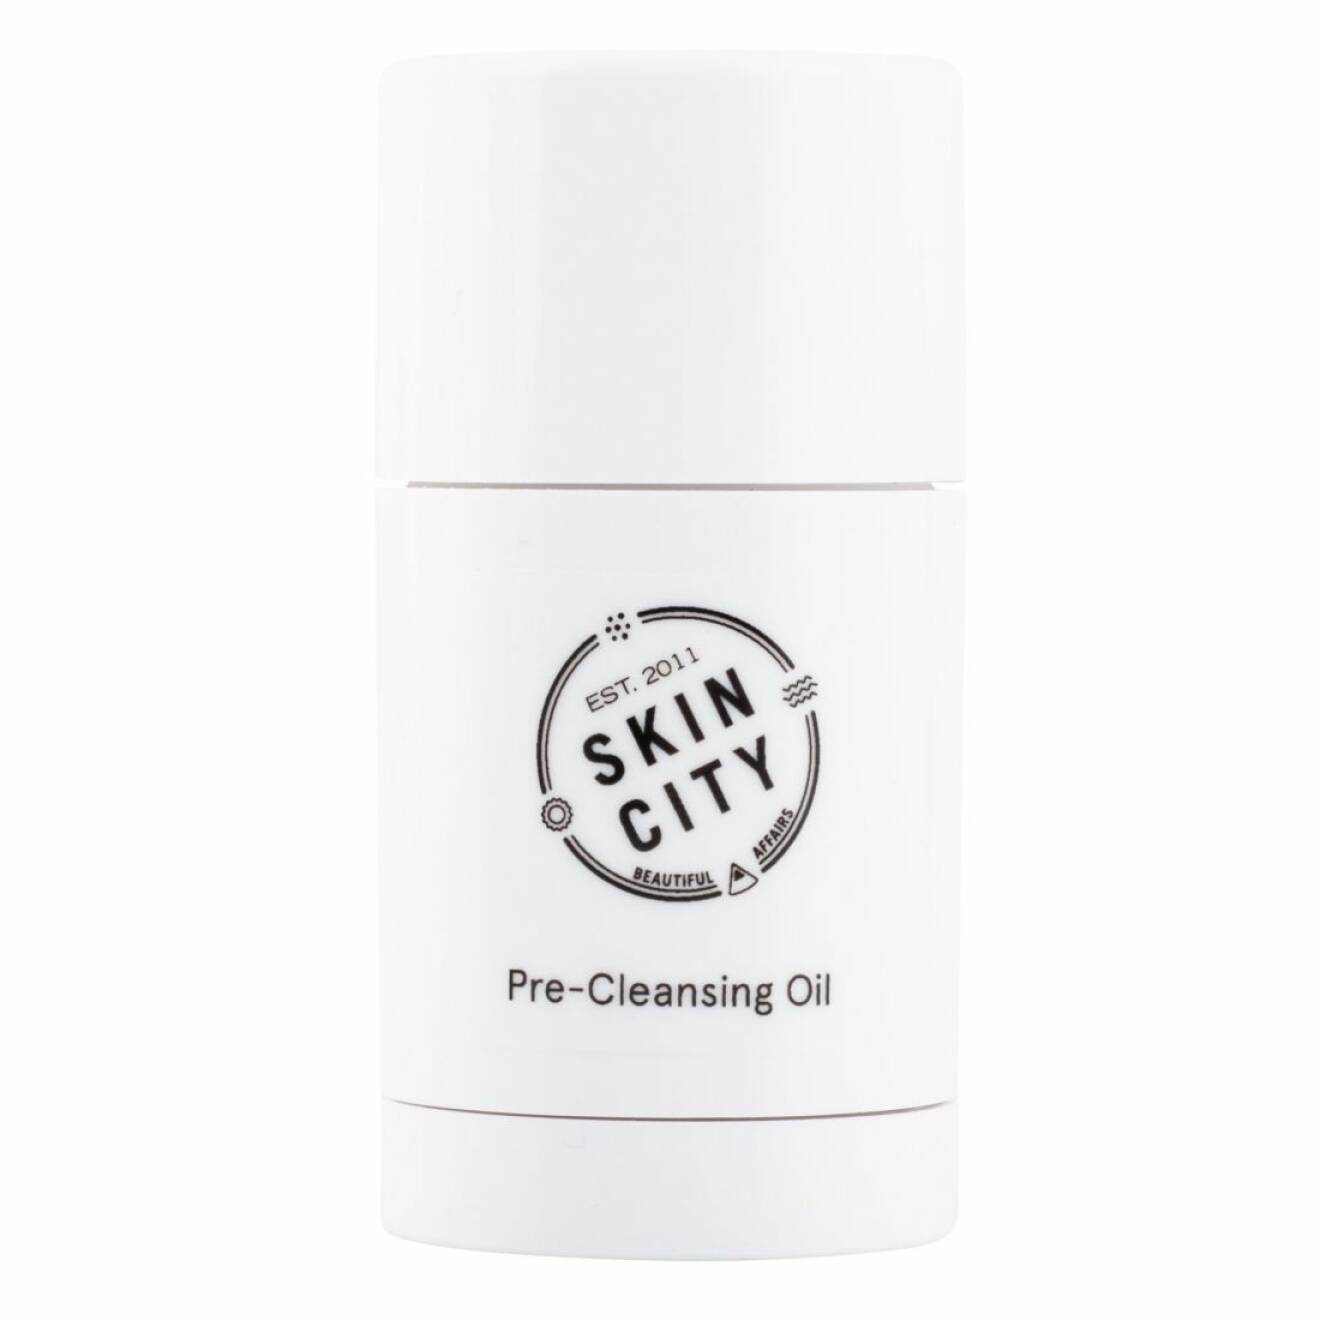 Pre-cleansing oil från Skincity är en micellär rengöring i stiftformat som smälter till olja i kontakt med hud.